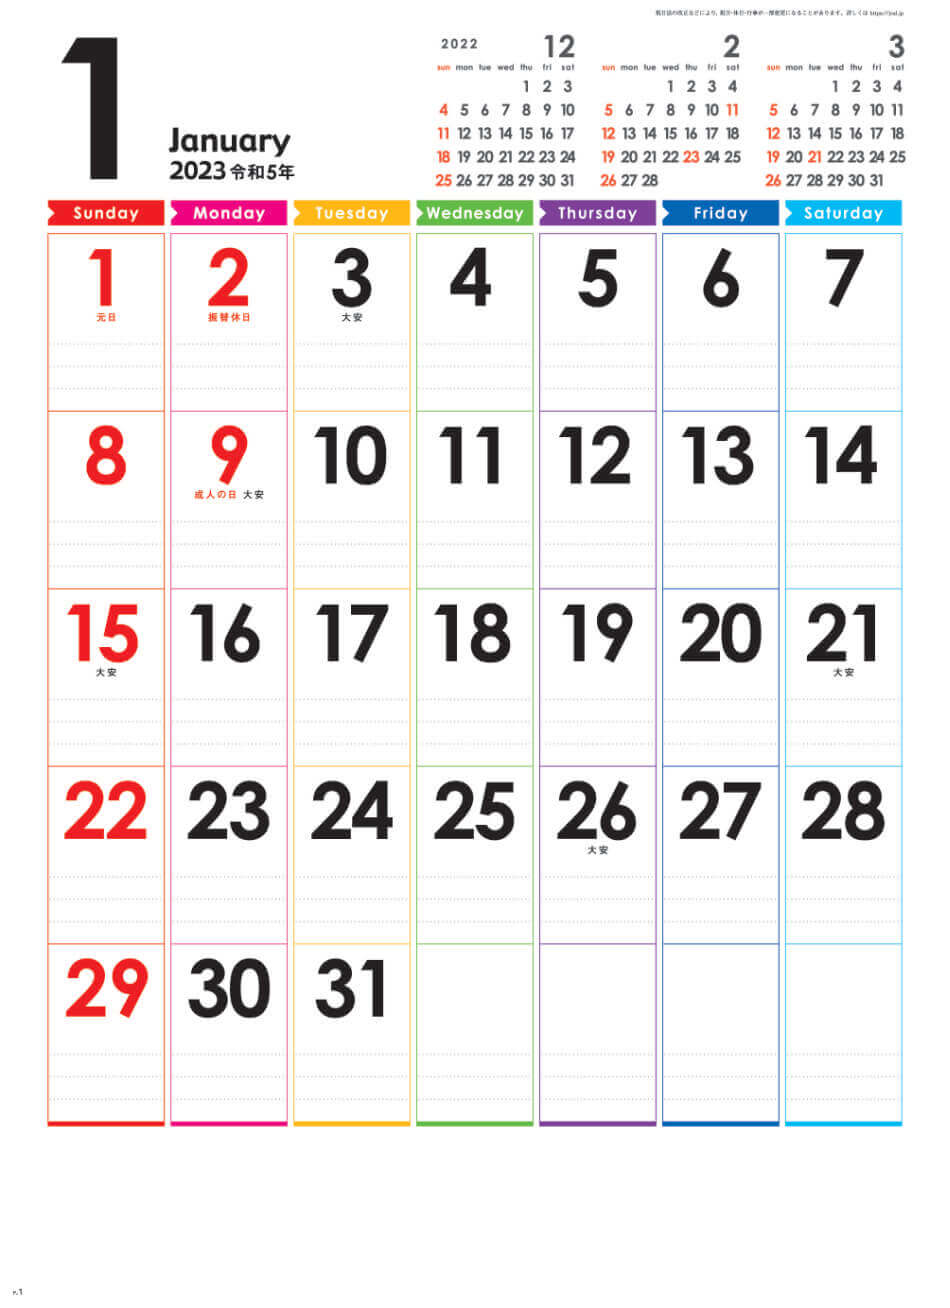  レインボーカレンダー 2023年カレンダーの画像